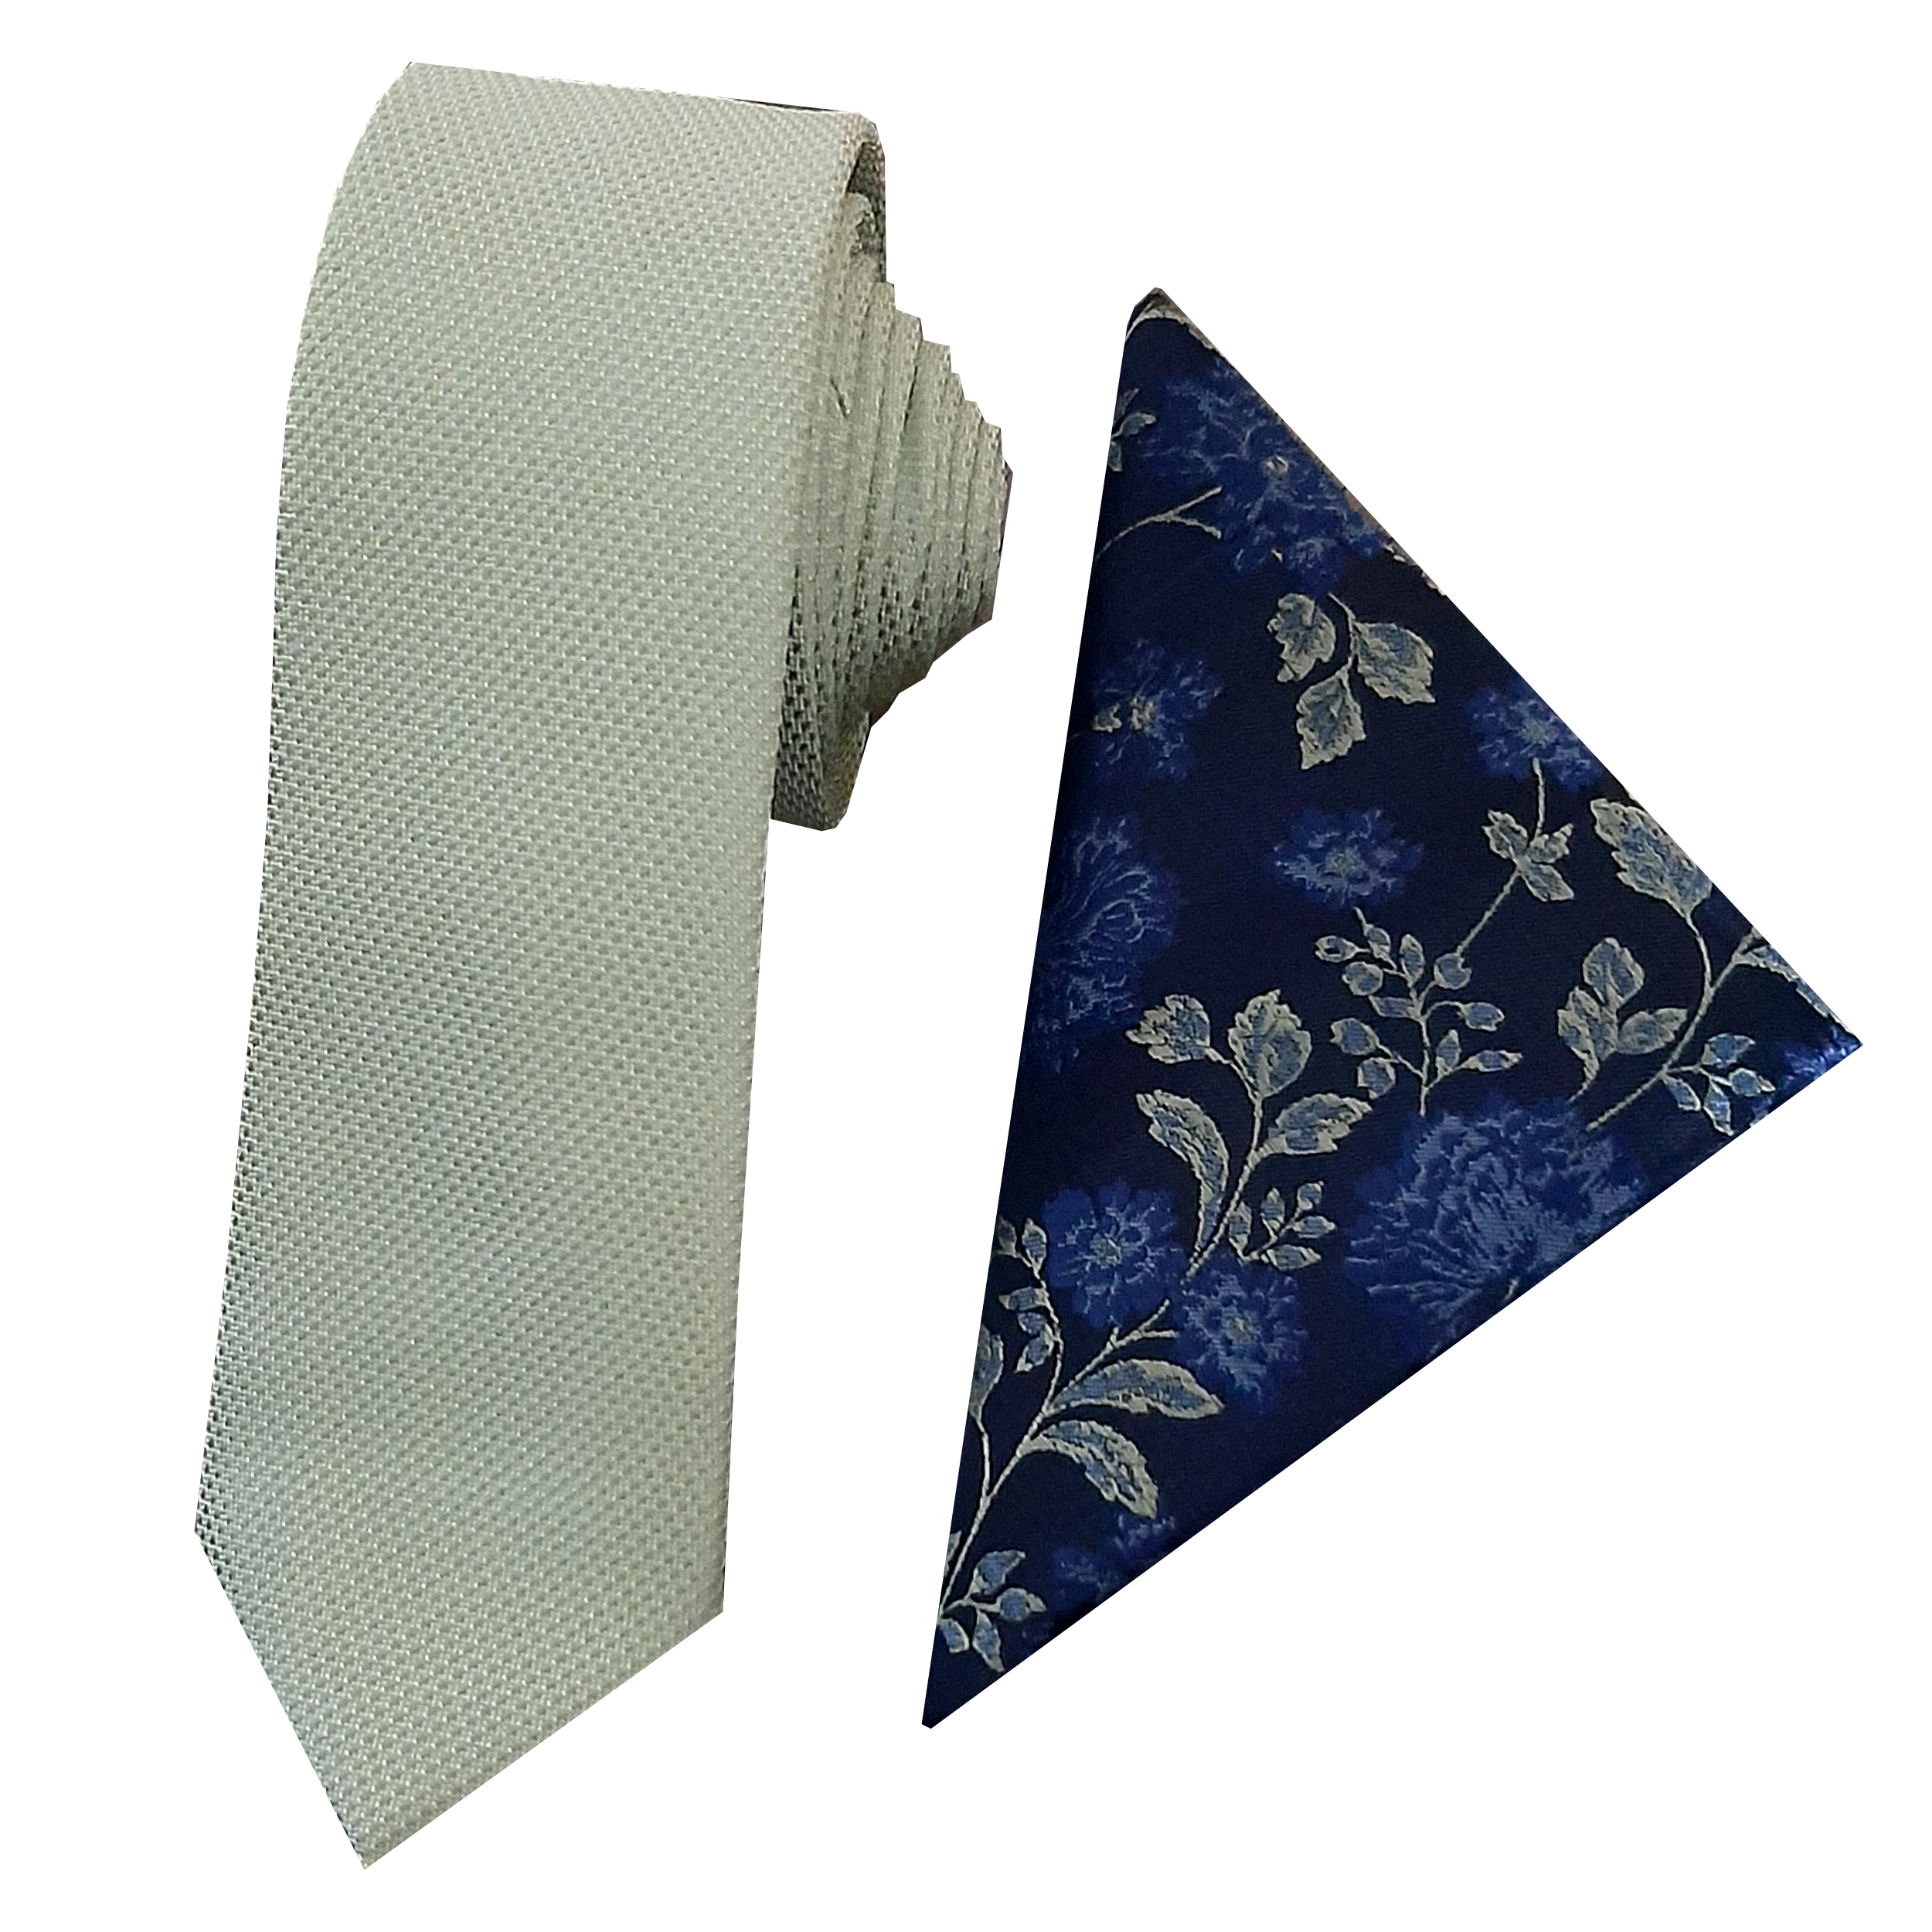 ست کراوات و دستمال جیب مردانه نکست مدل 531zd